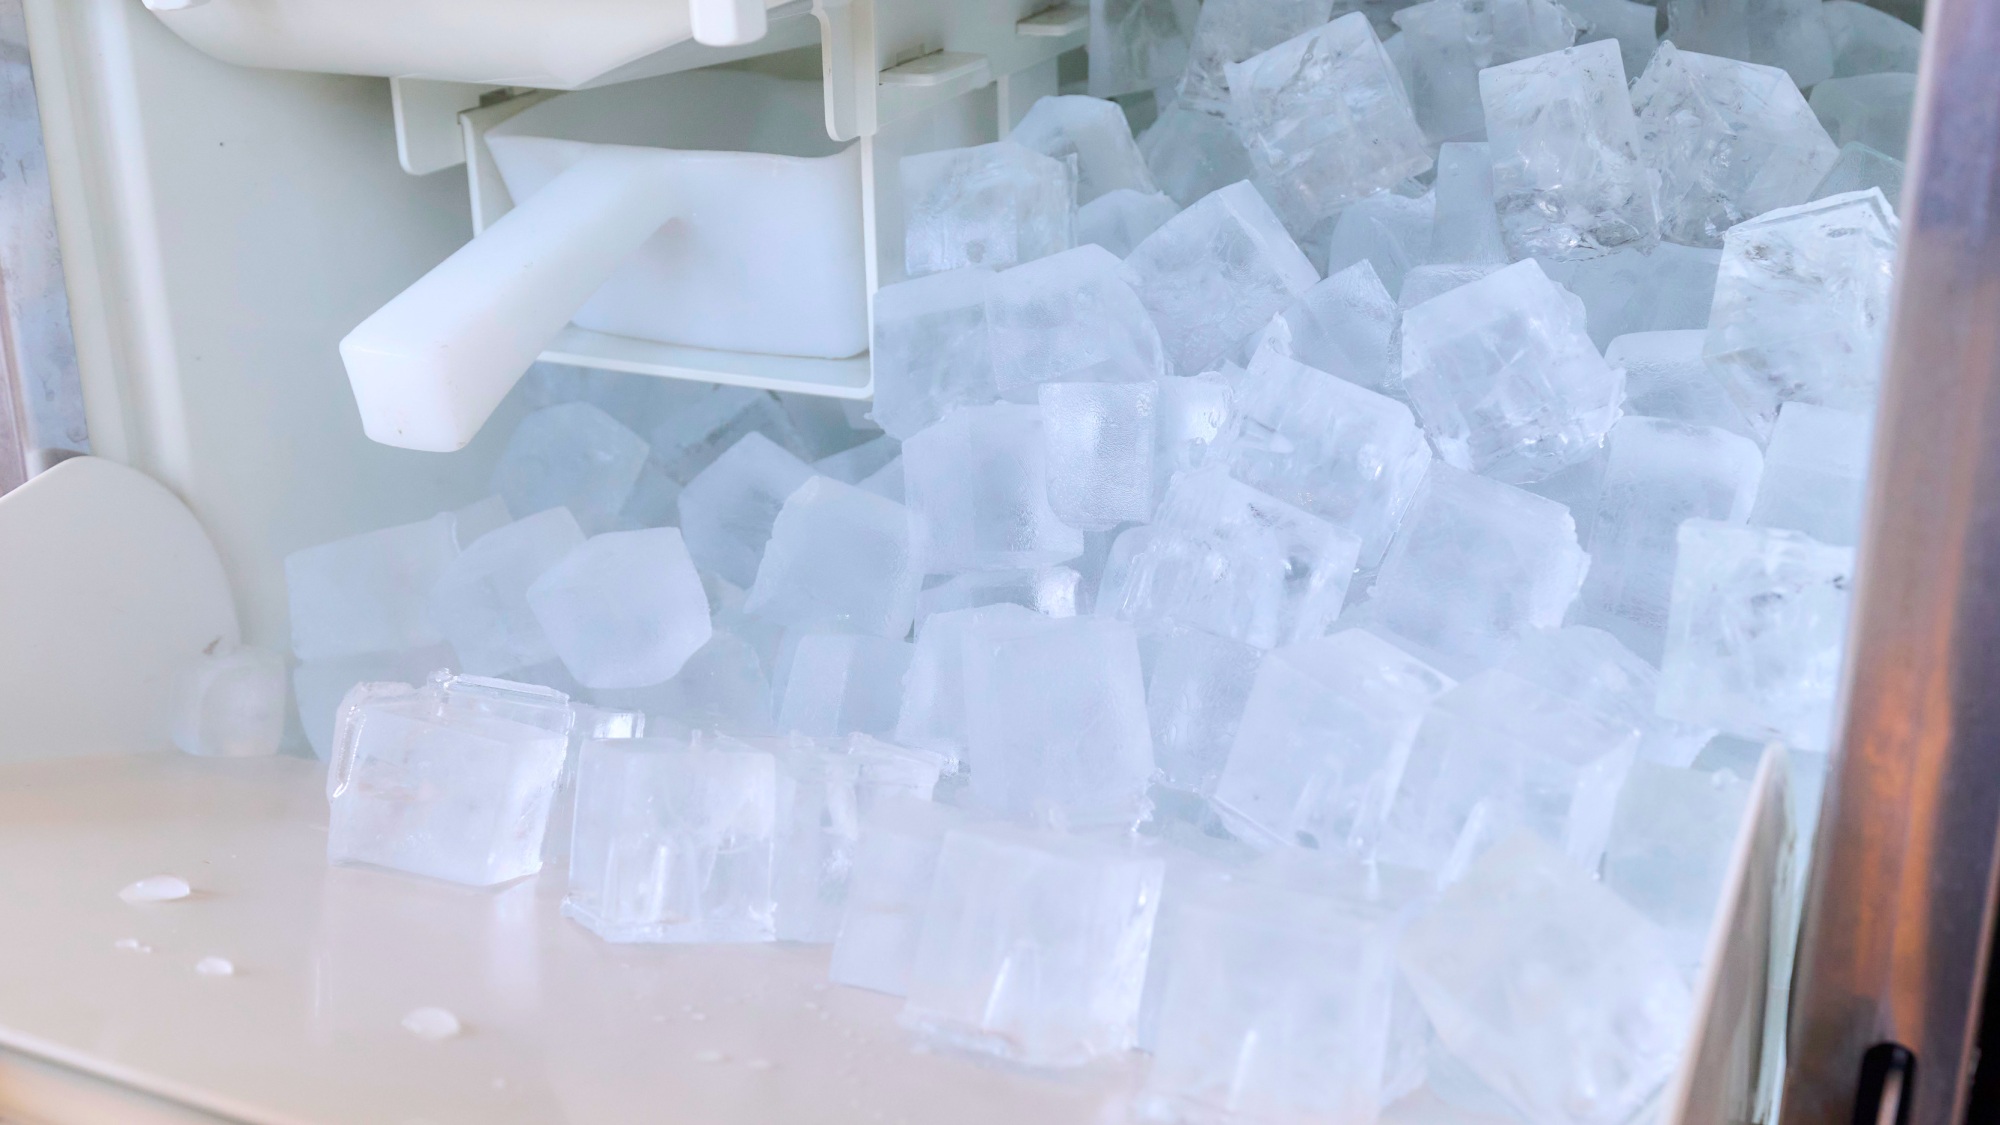 ・【製氷機】アイスペールにて無料で氷をご用意いたします。フロントまでご用命ください